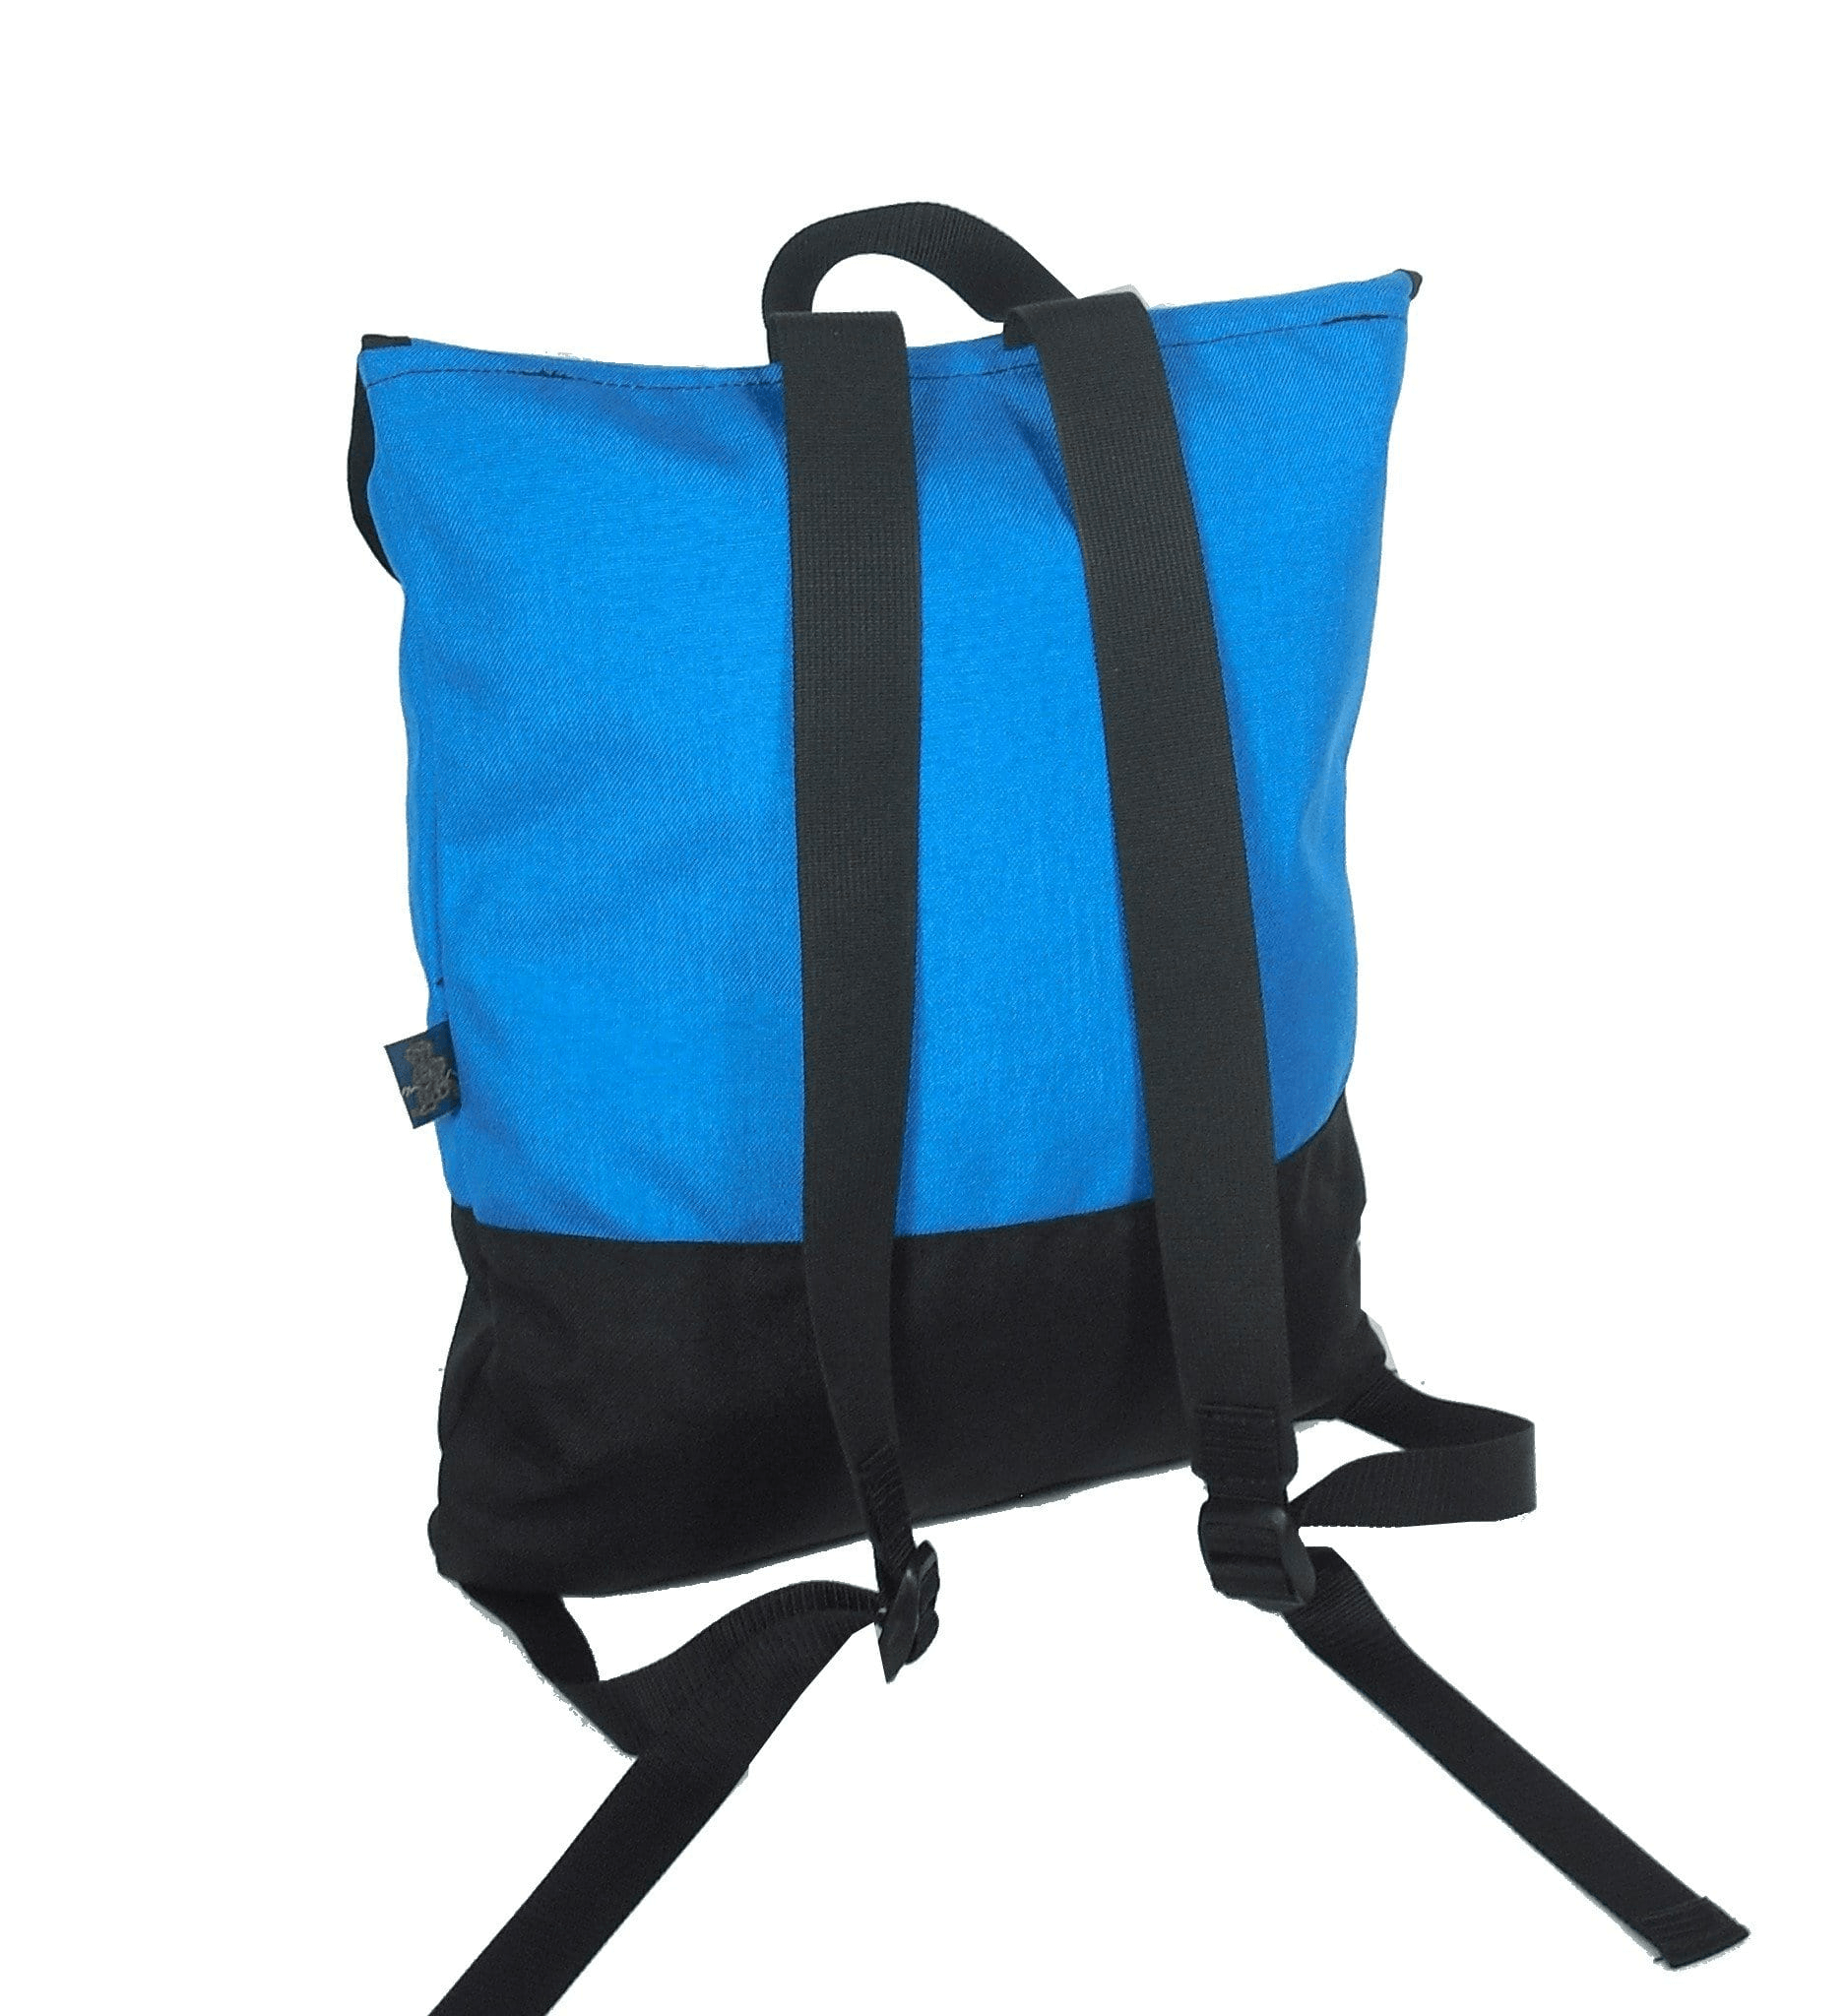 Made in USA DOCU-BP Backpacks